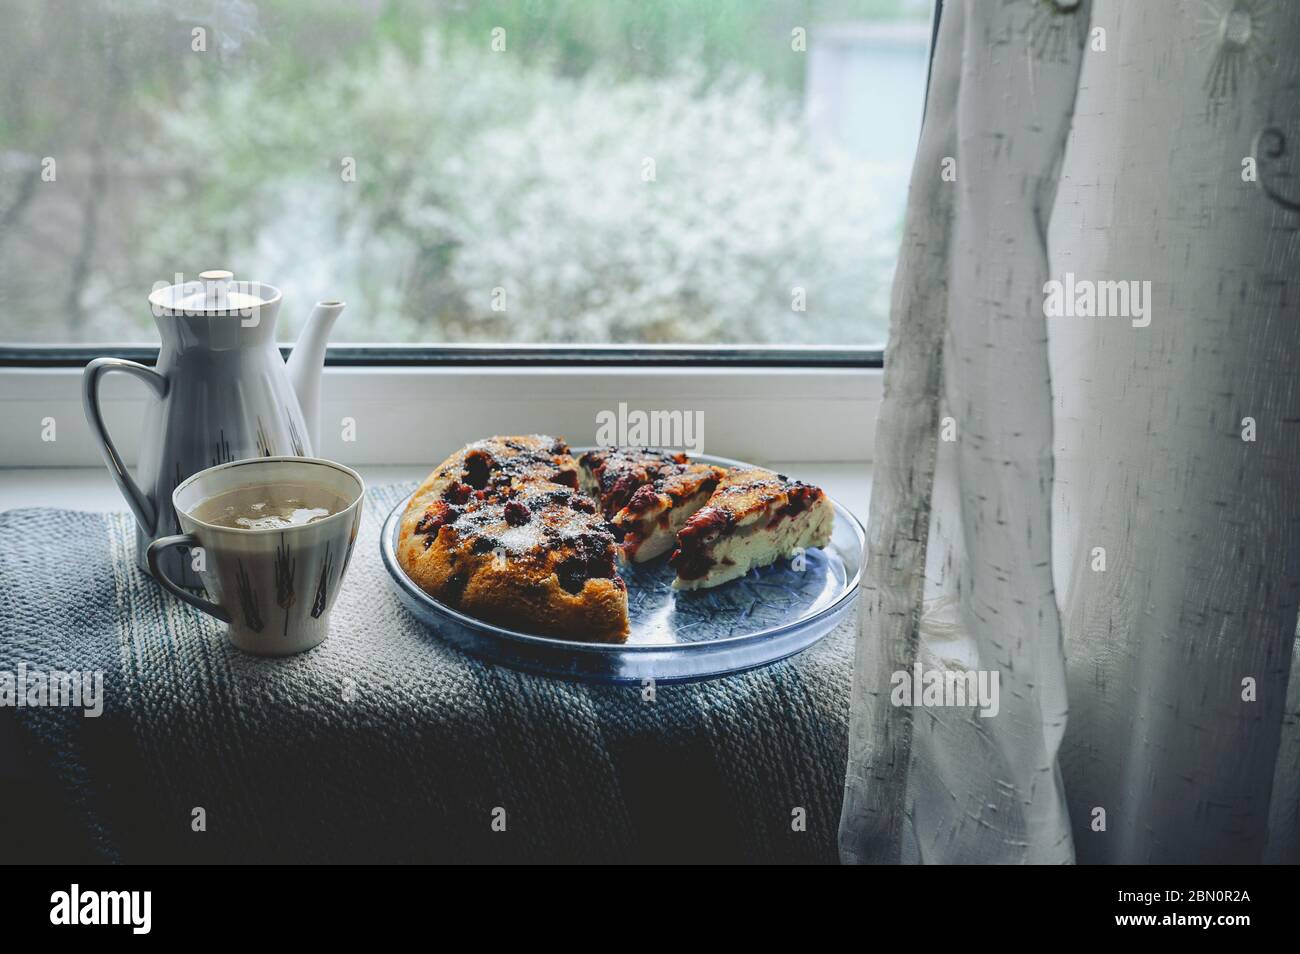 Gemütliches Zuhause Tee-Party am Fenster bei schlechtem Wetter. Porzellan weiße Teekanne und Tasse mit Tee, hausgemachte Beerenkuchen auf einem runden blauen Teller gegen eine blühende tr Stockfoto